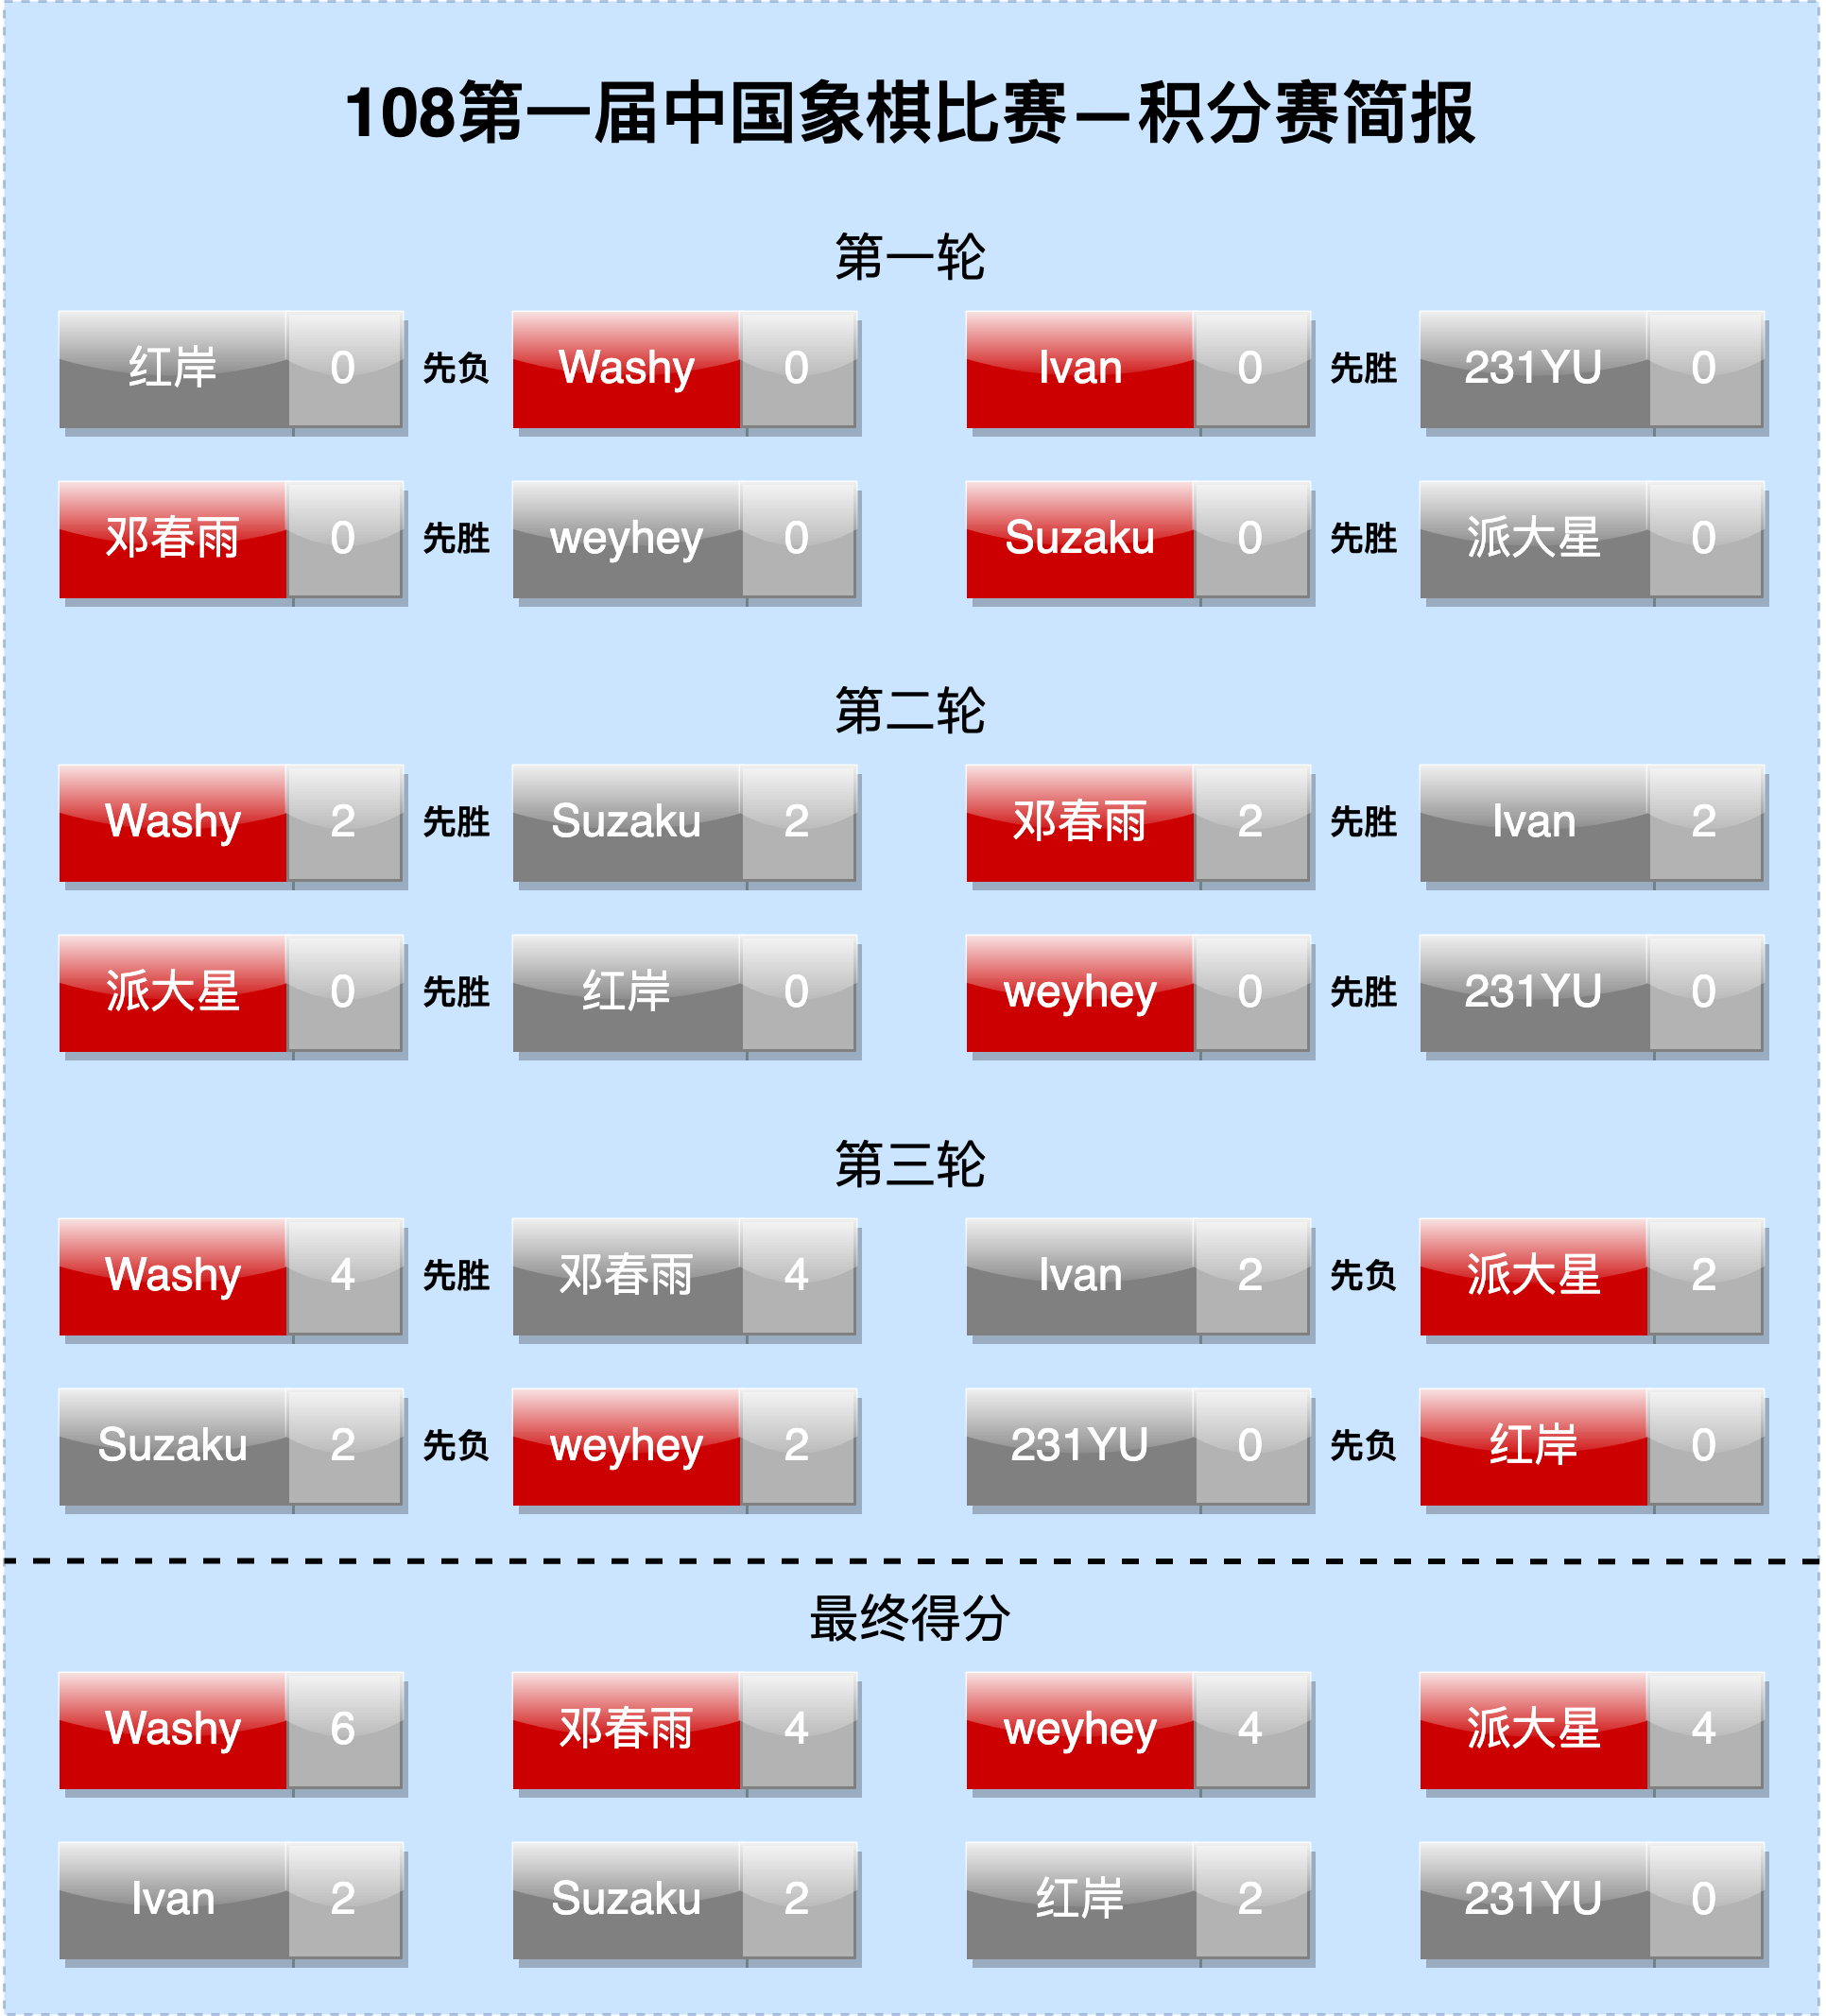 108第一届中国象棋比赛-积分赛